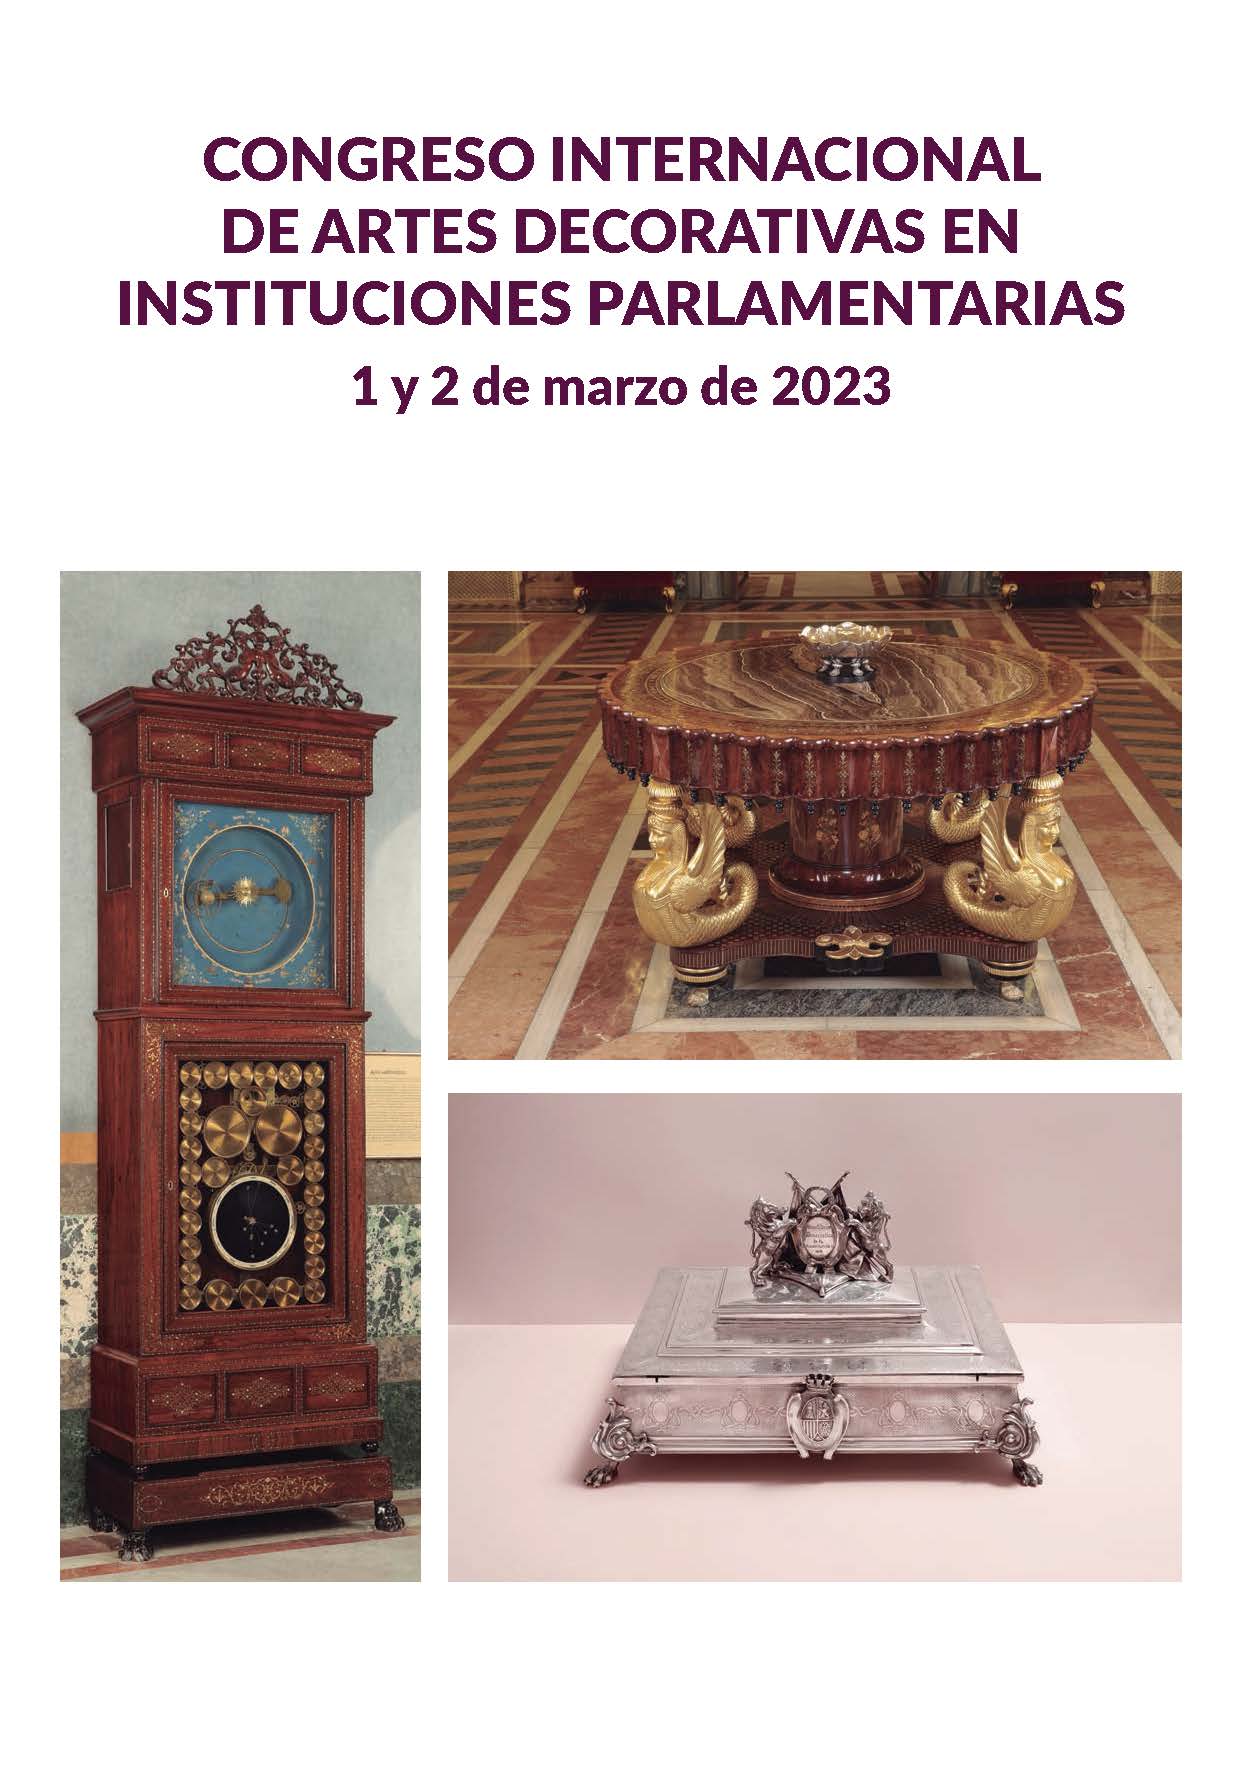 Actas del congreso internacional de artes decorativas en instituciones parlamentarias.